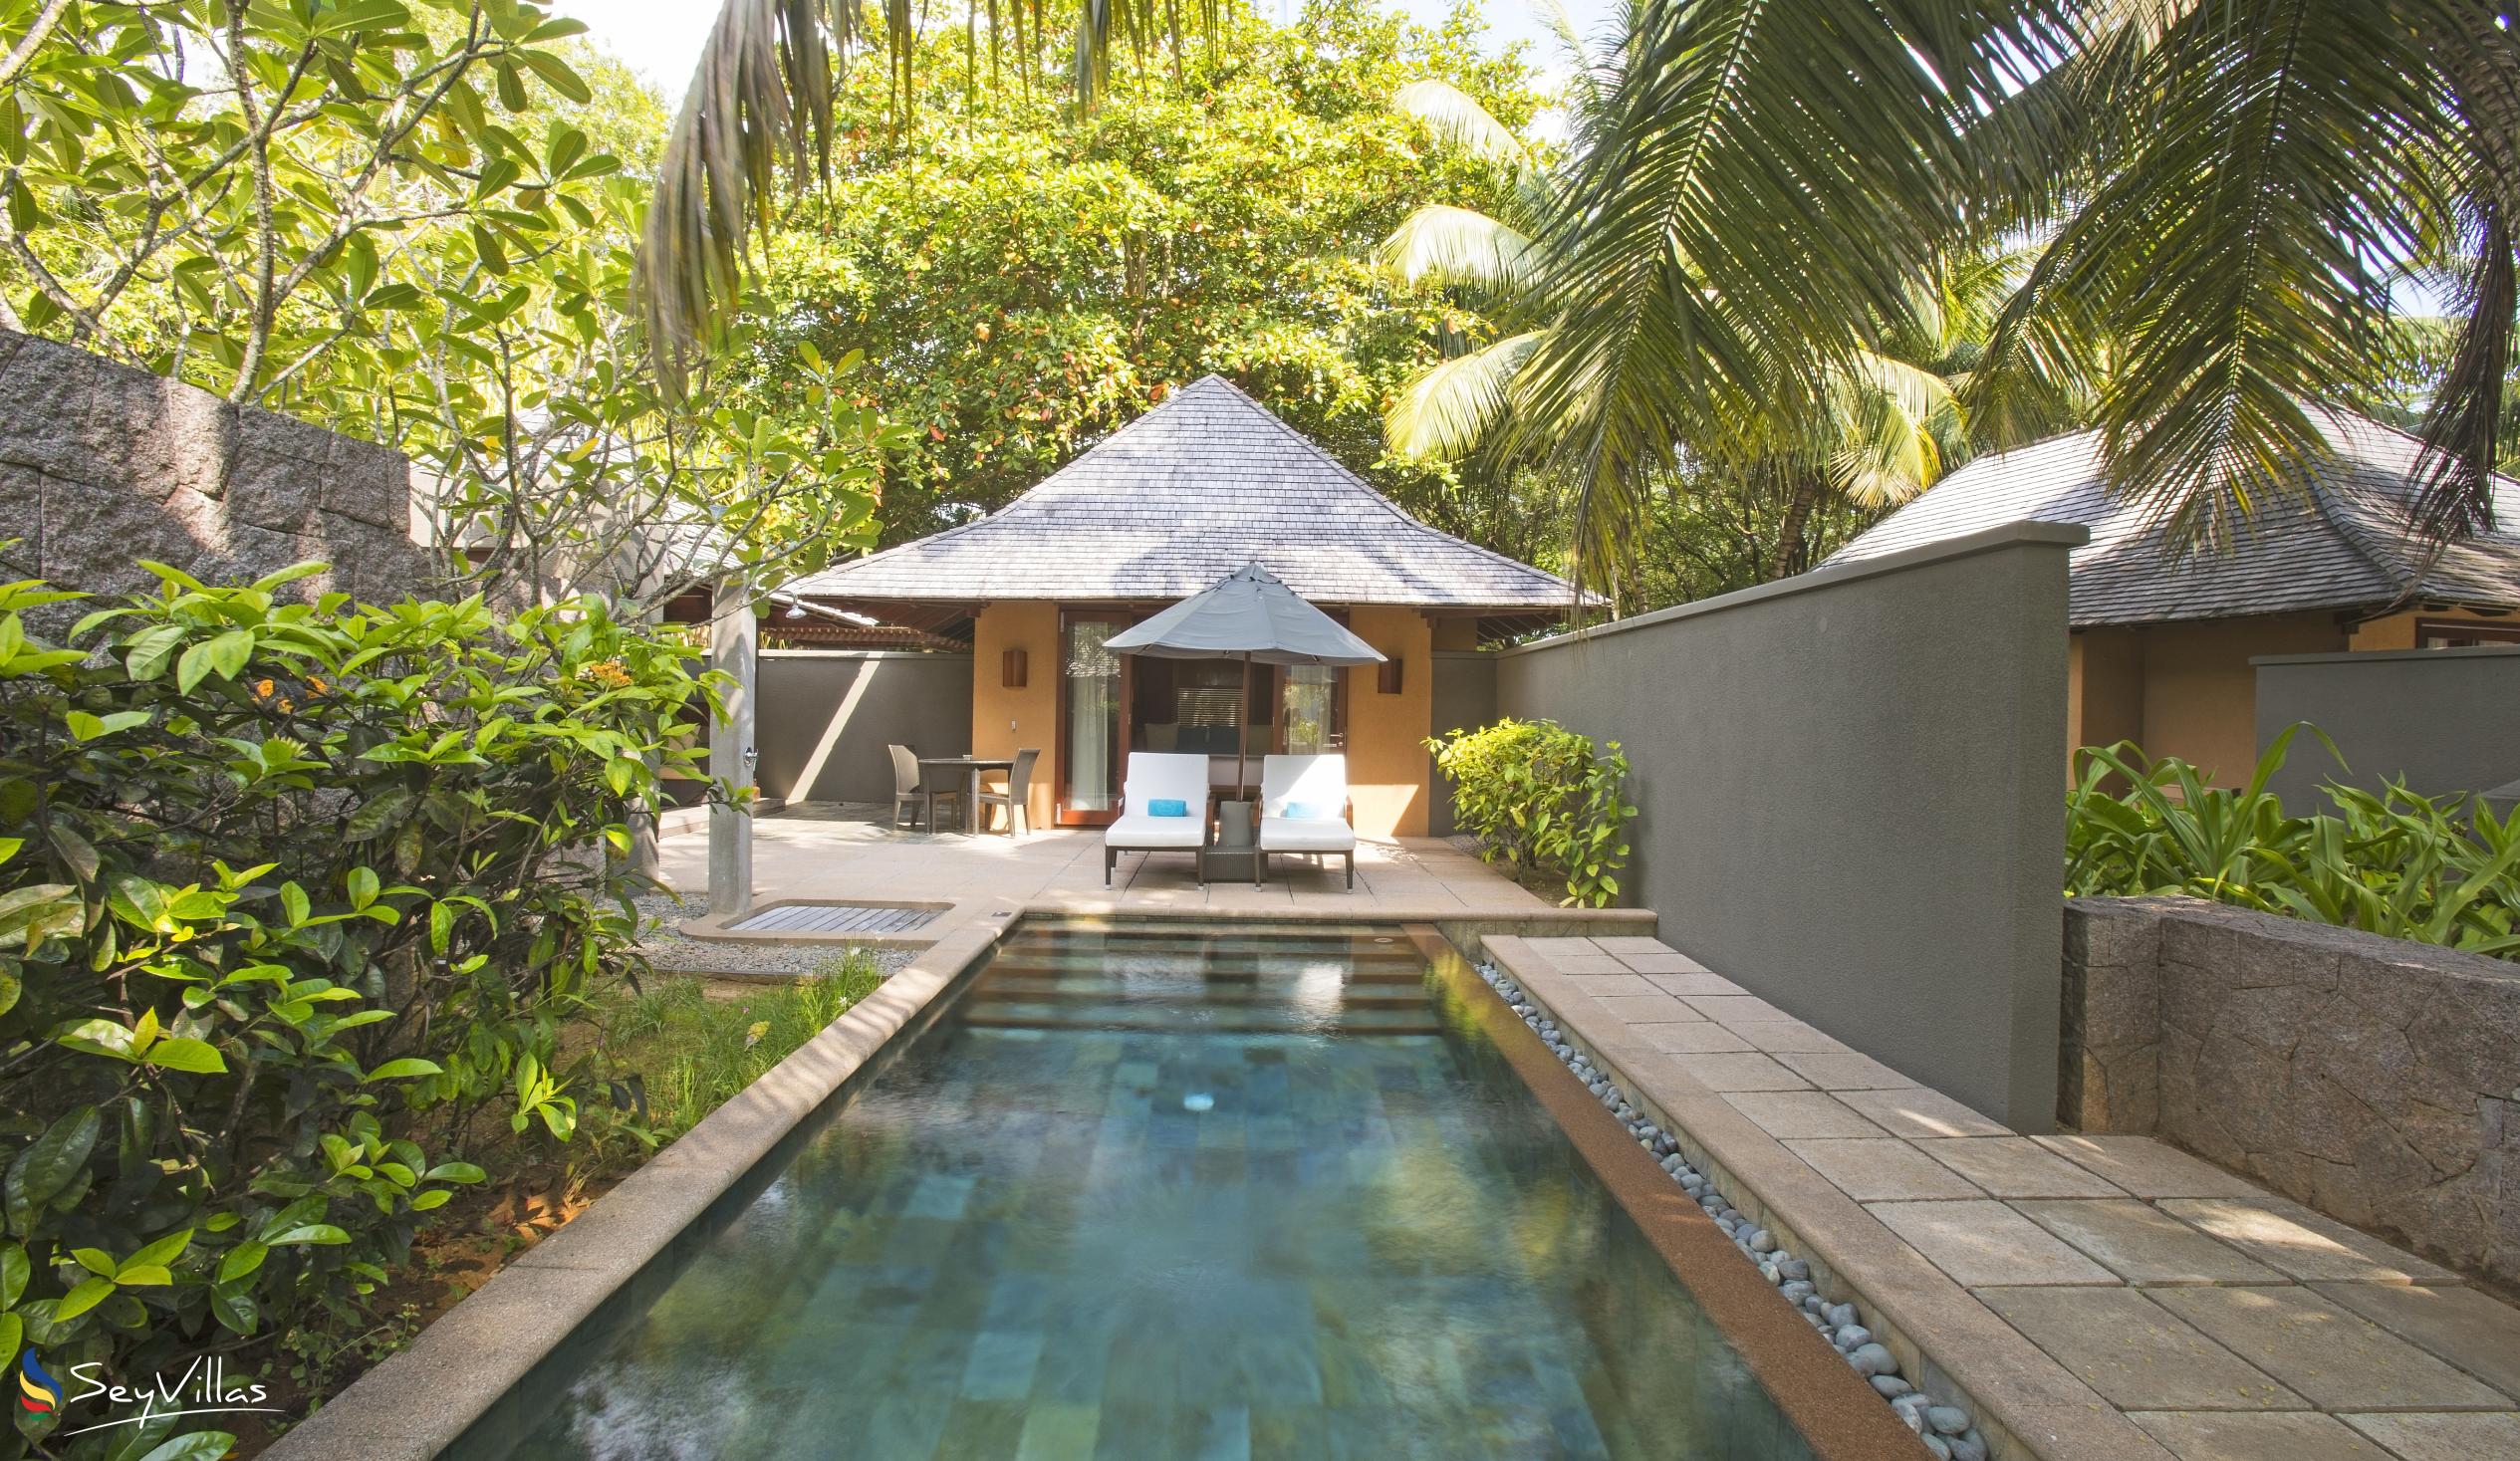 Foto 261: Constance Ephelia Seychelles - Villa sulla spiaggia con 1 camera - Mahé (Seychelles)